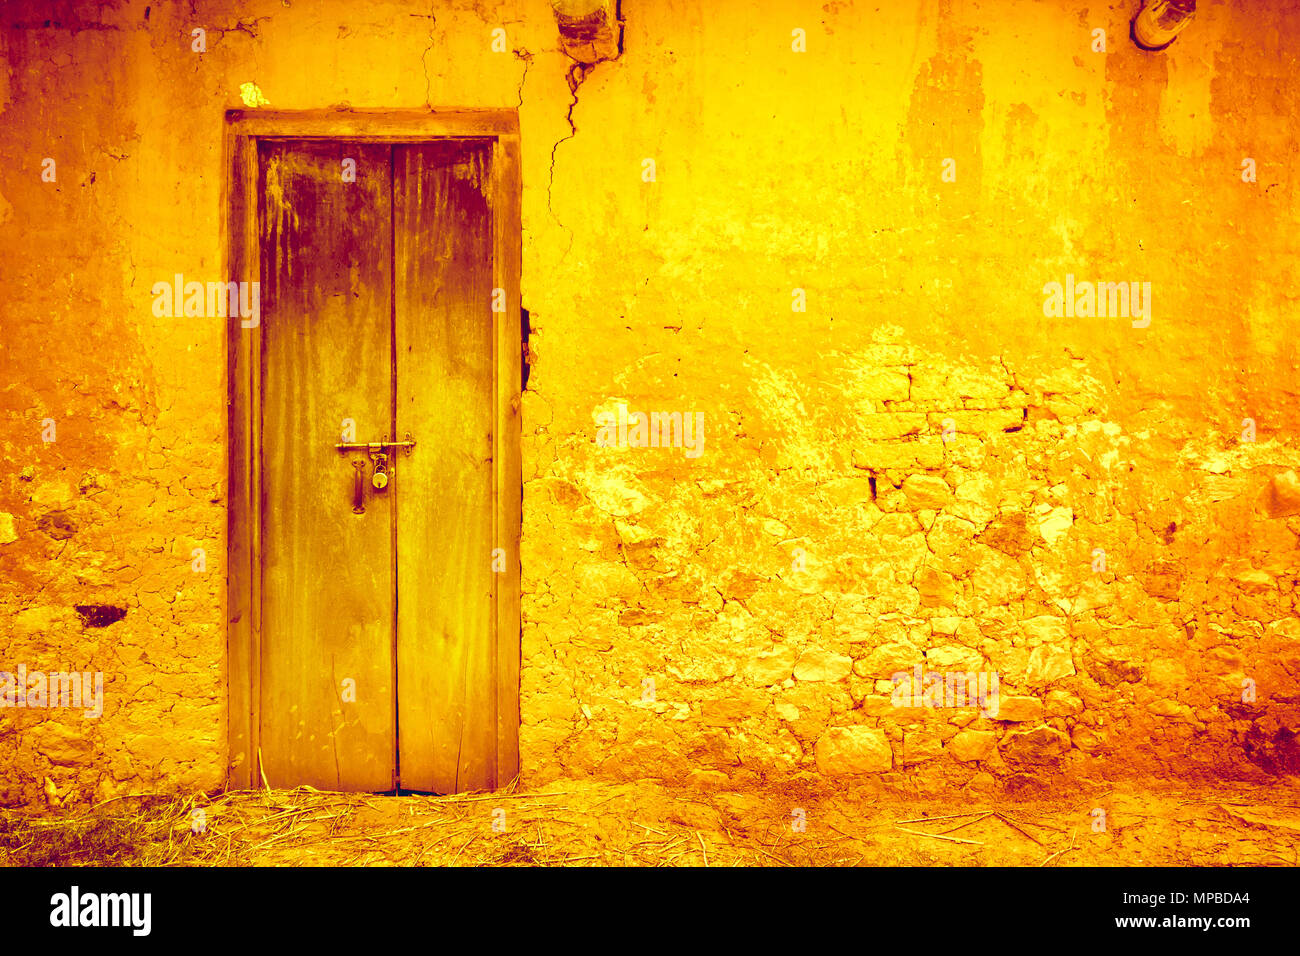 Elegante incrinato vintage parete luminosa in giallo arancione con sfumature blu royal porta di legno. Uno sfondo ideale per uno stile rétro illustrazioni e collage. Stile grunge. Ritocco artistico. Foto Stock